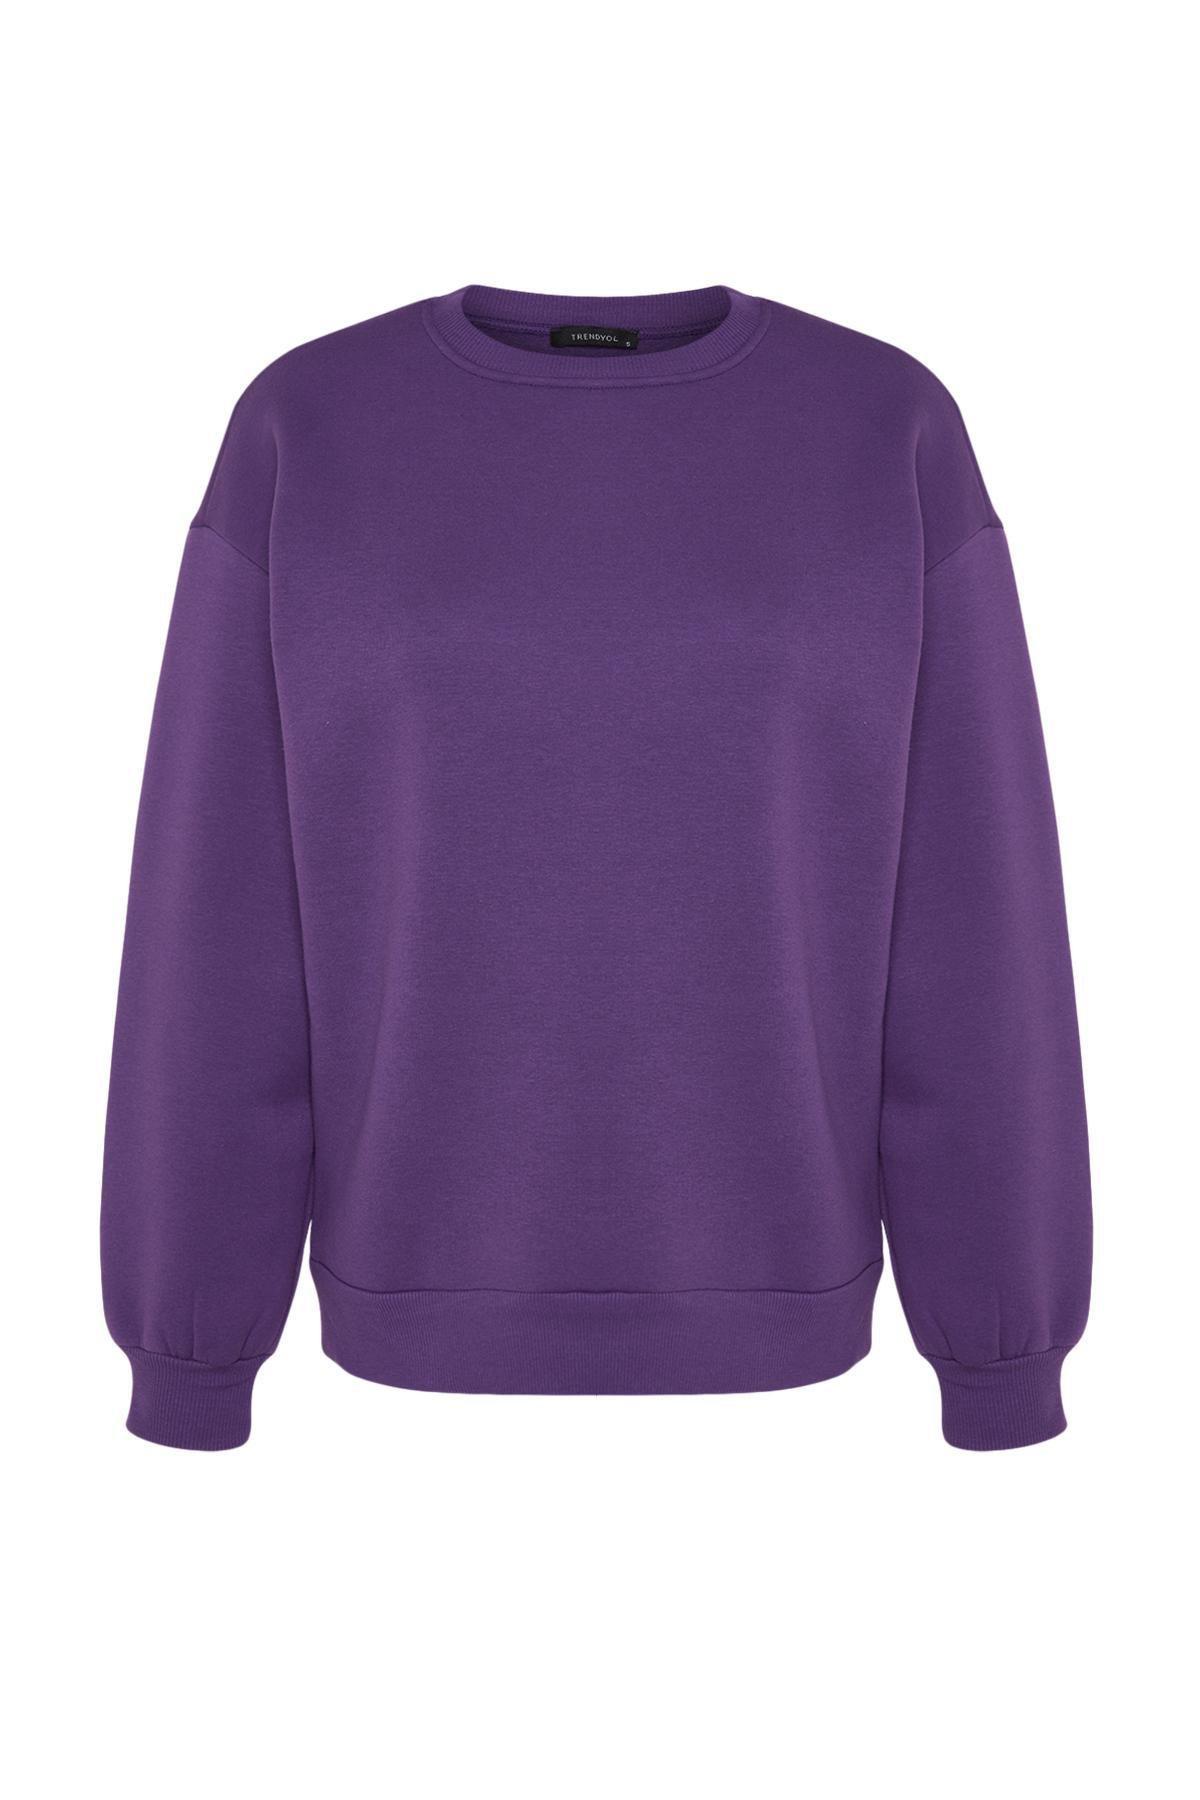 Trendyol - Purple Oversize Crew Neck Sweatshirt